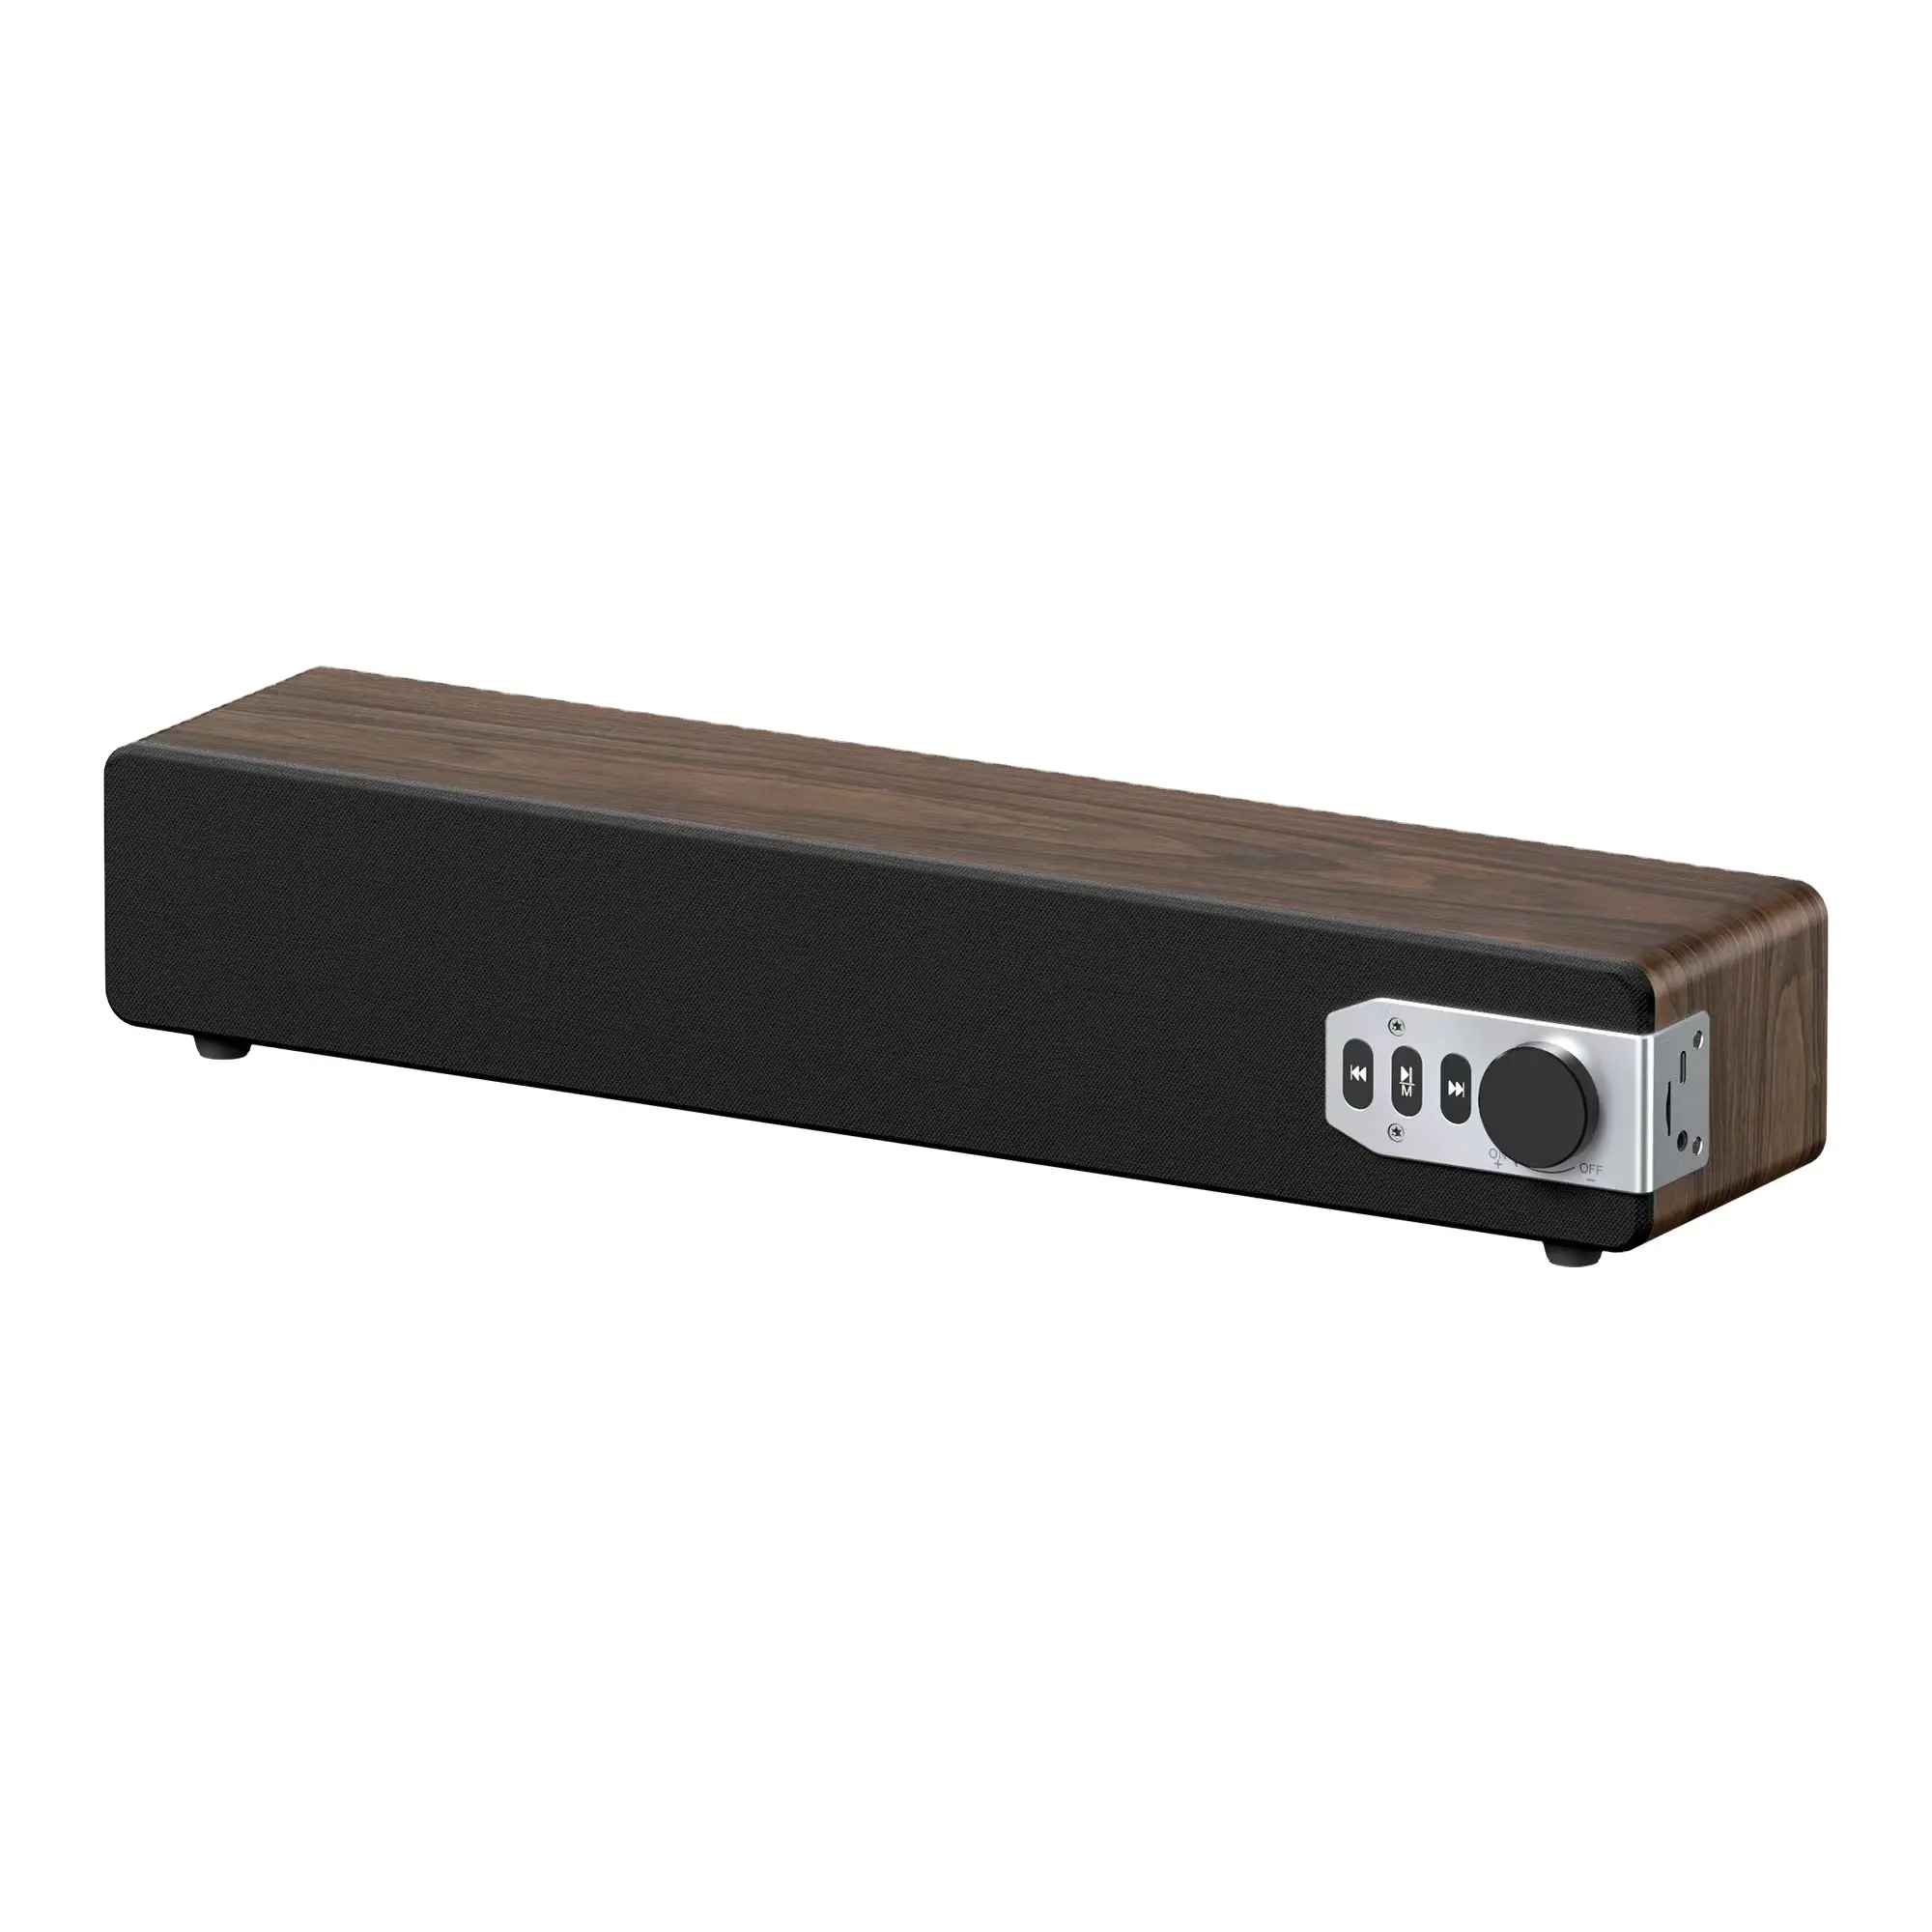 Haut-parleur Bluetooth en bois en forme de barre système de cinéma maison TV meilleure qualité haut-parleur TV avec haut-parleurs stéréo en bois FM